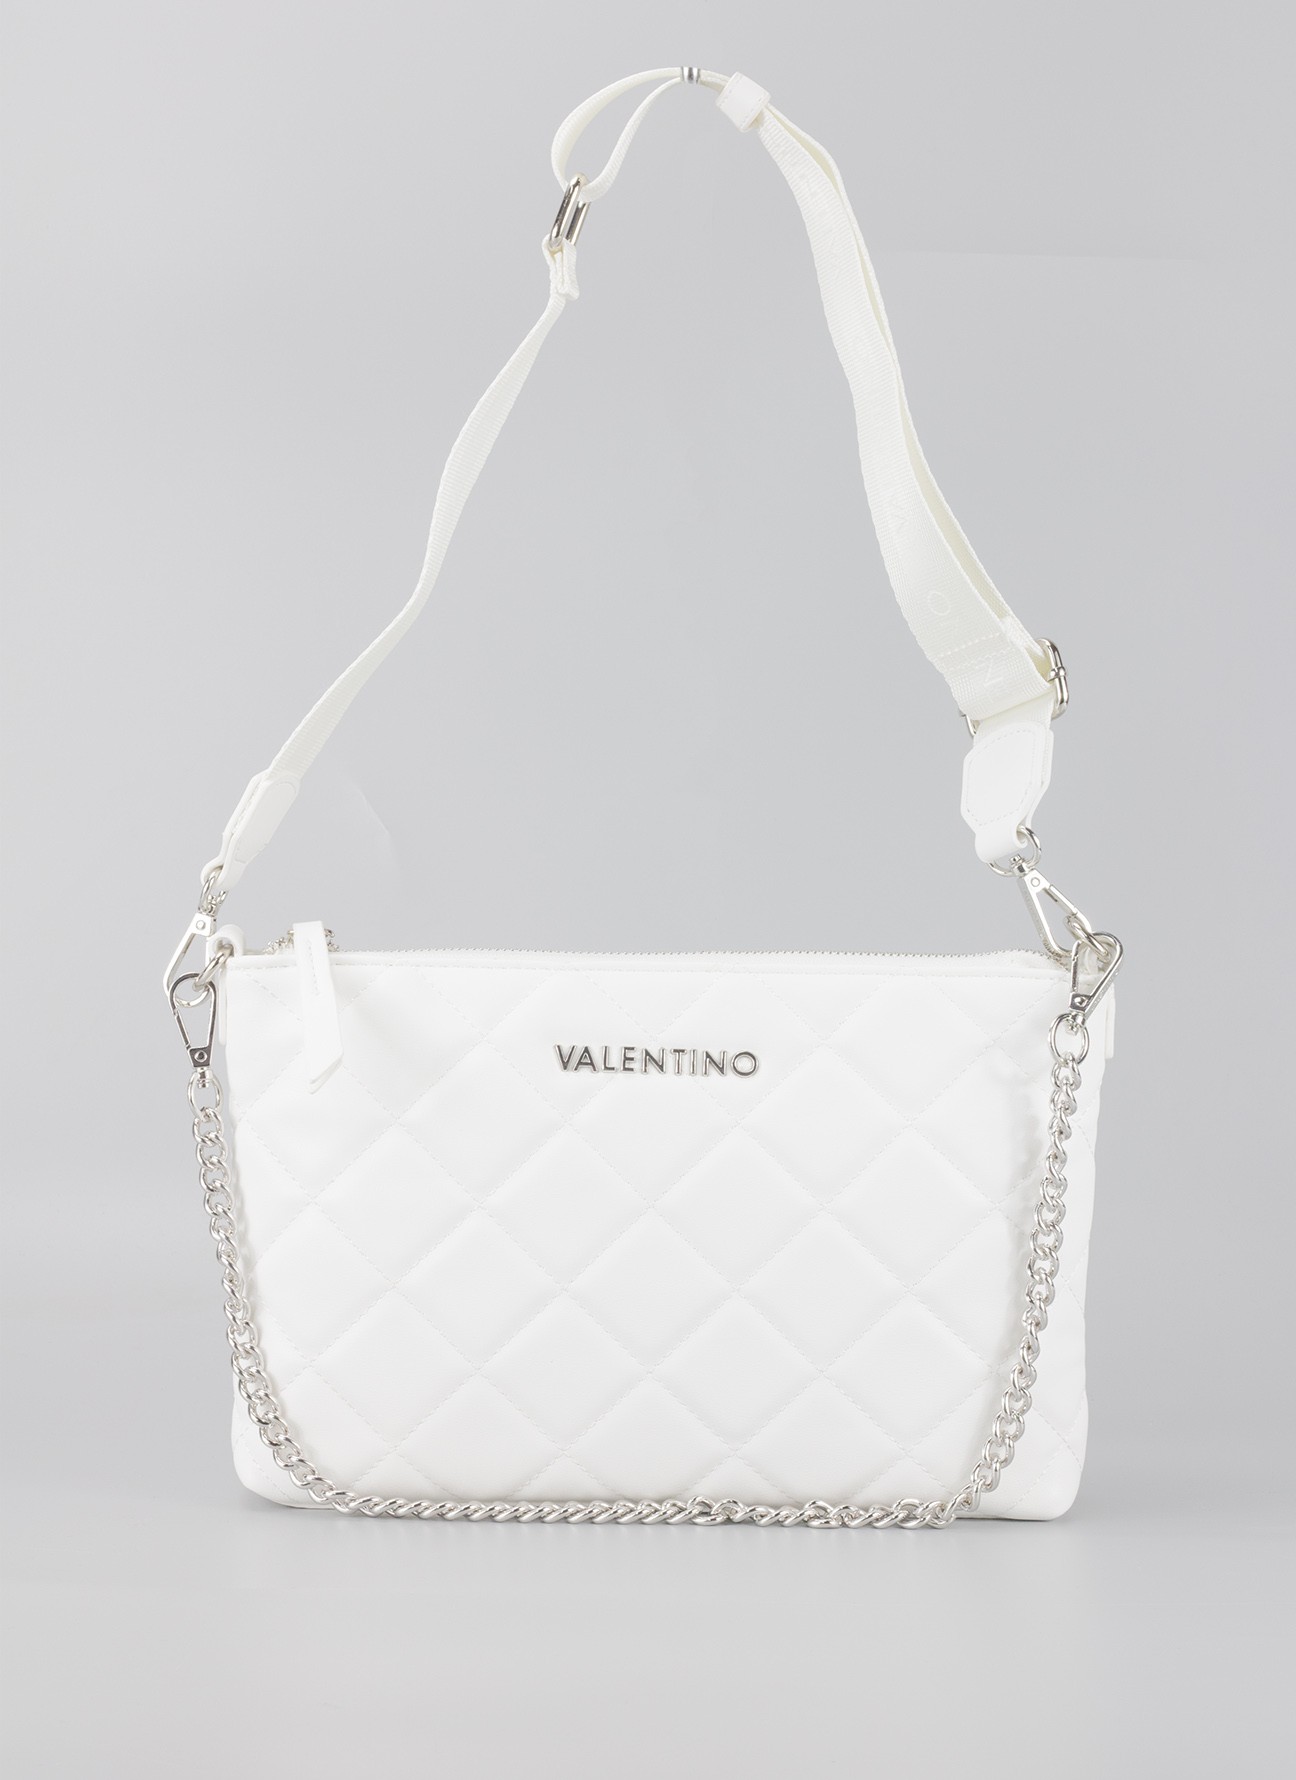 Bolso en color blanco para mujer, Valentino Bags